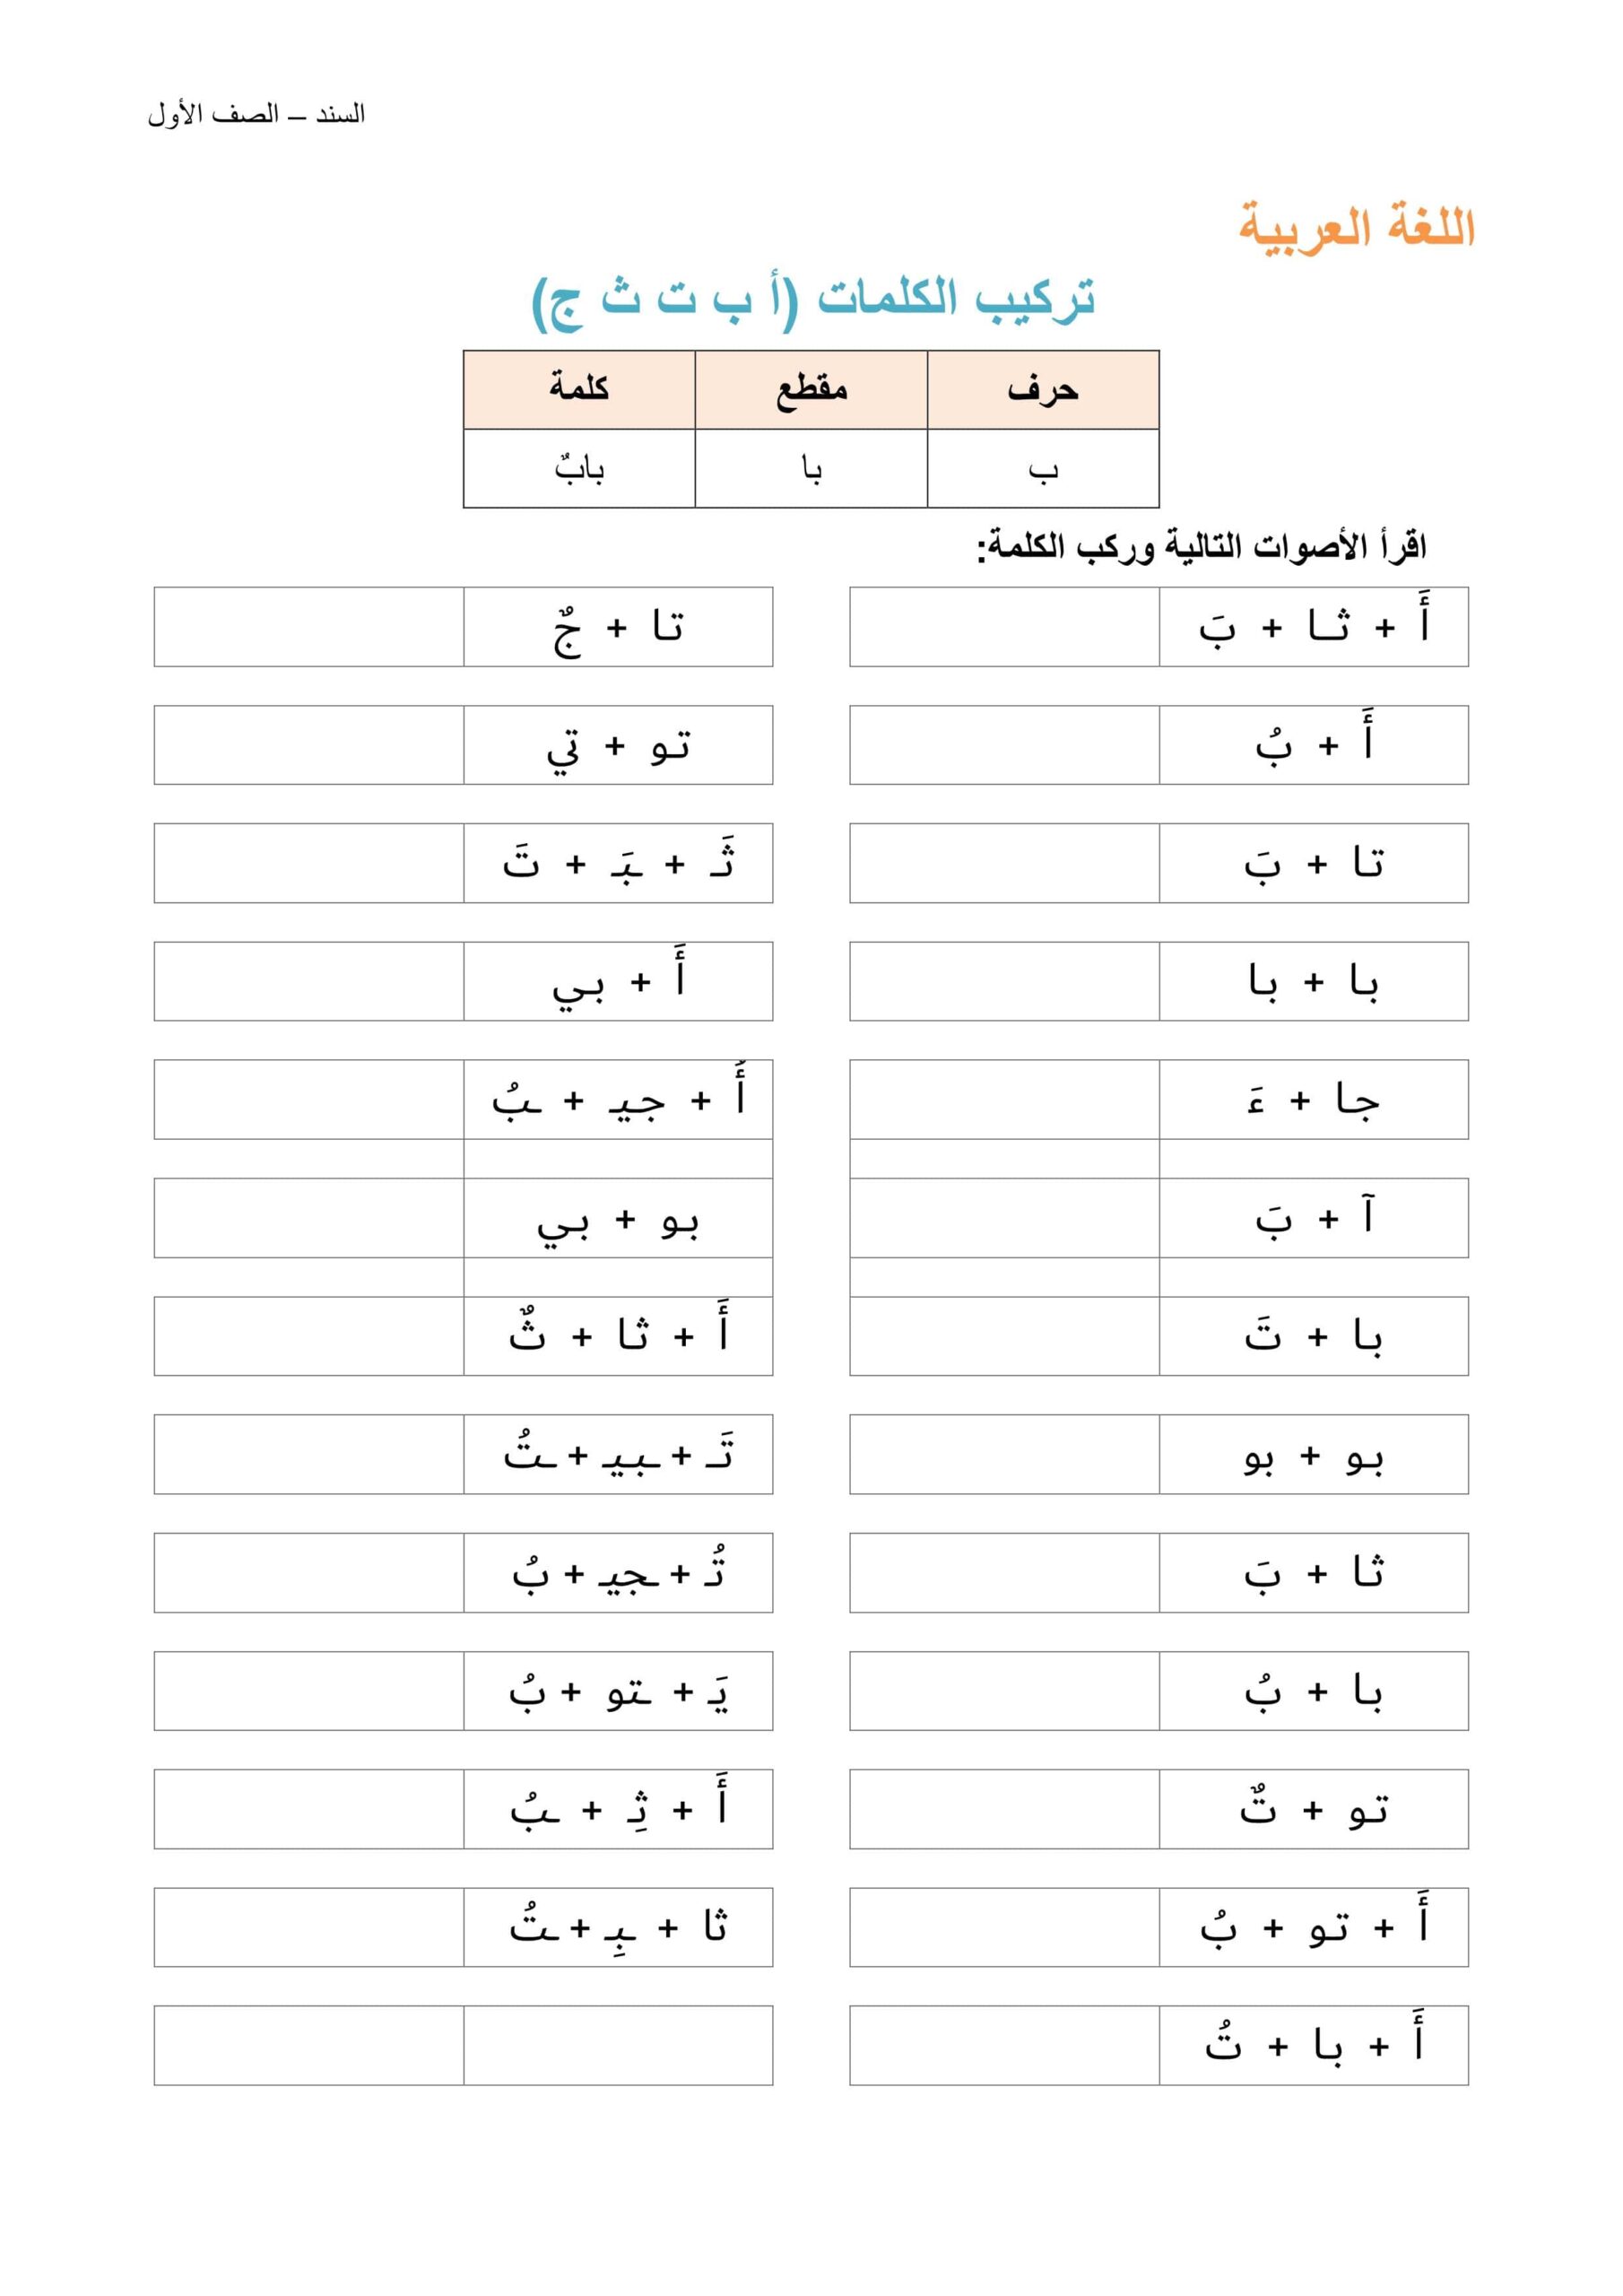 أوراق عمل تركیب الكلمات - أب ت ث ج - اللغة العربية الصف الأول 